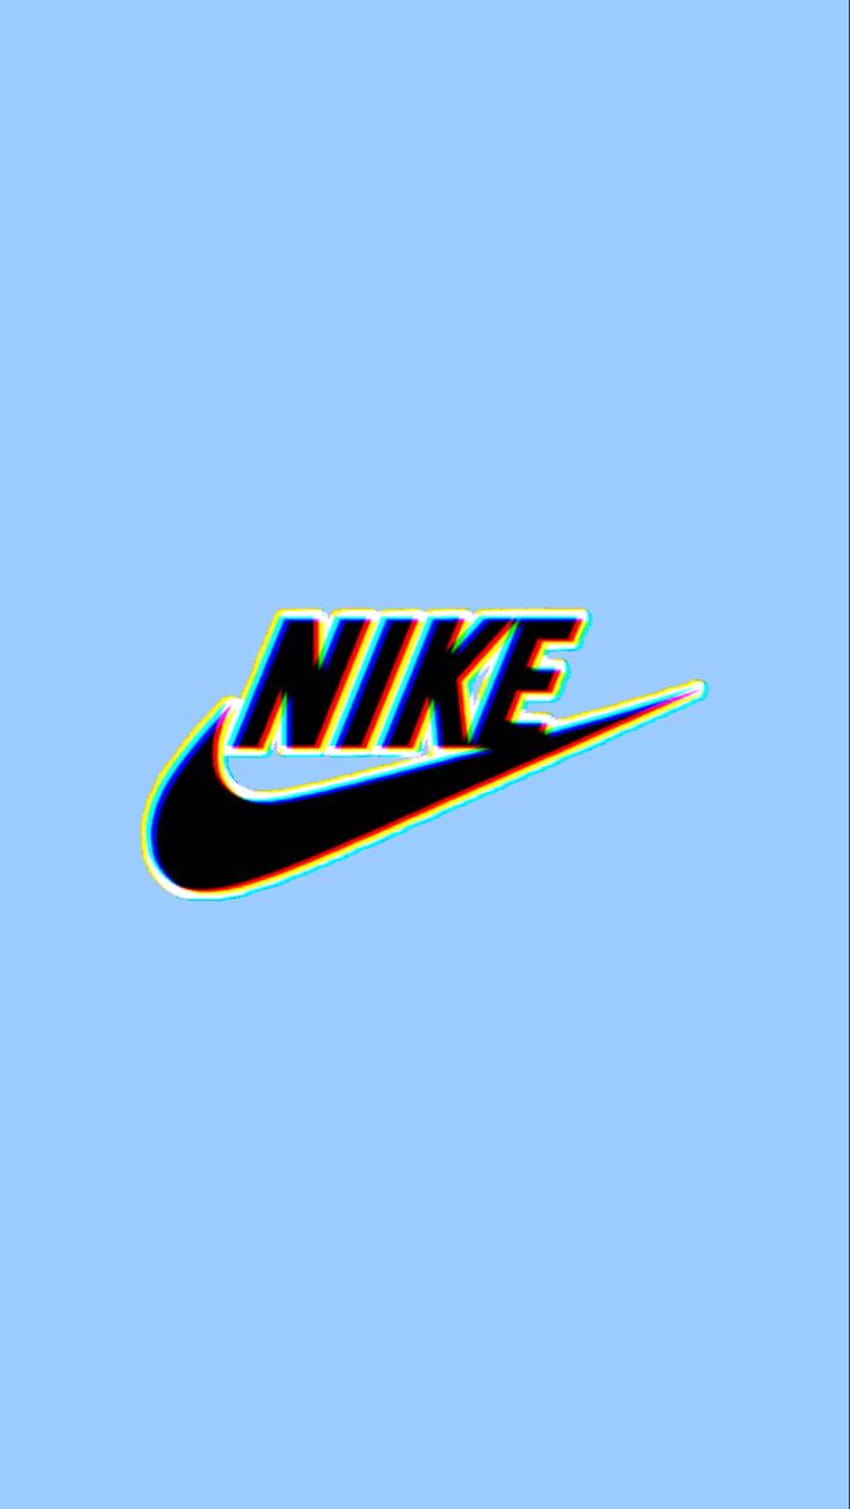 Bức hình nền Nike với đặc trưng màu xanh dương đem đến niềm tự hào và sự sang trọng cho mọi người sử dụng.